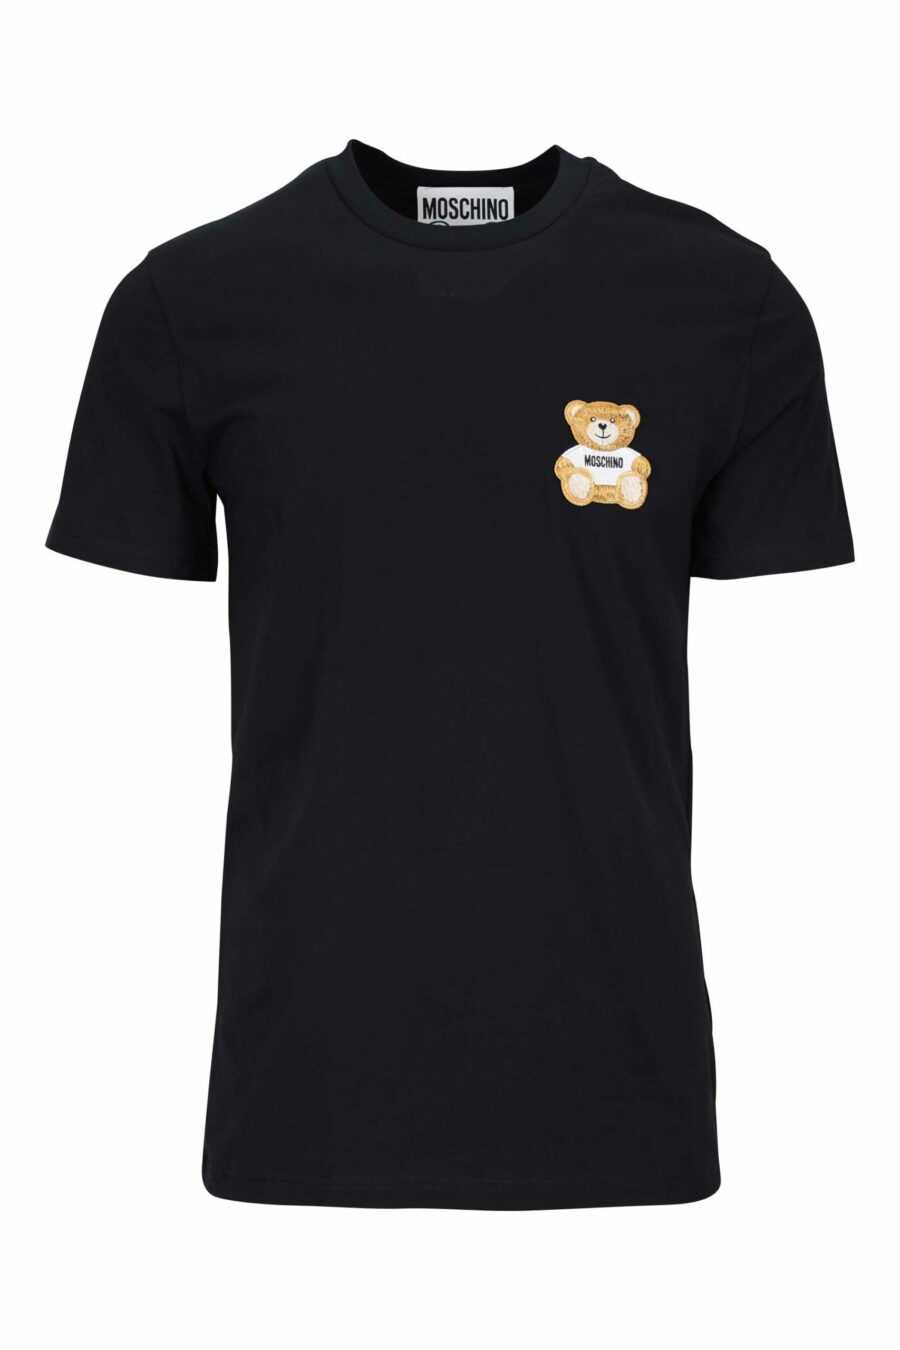 Camiseta negra con minilogo "teddy" bordado - 667113455549 scaled